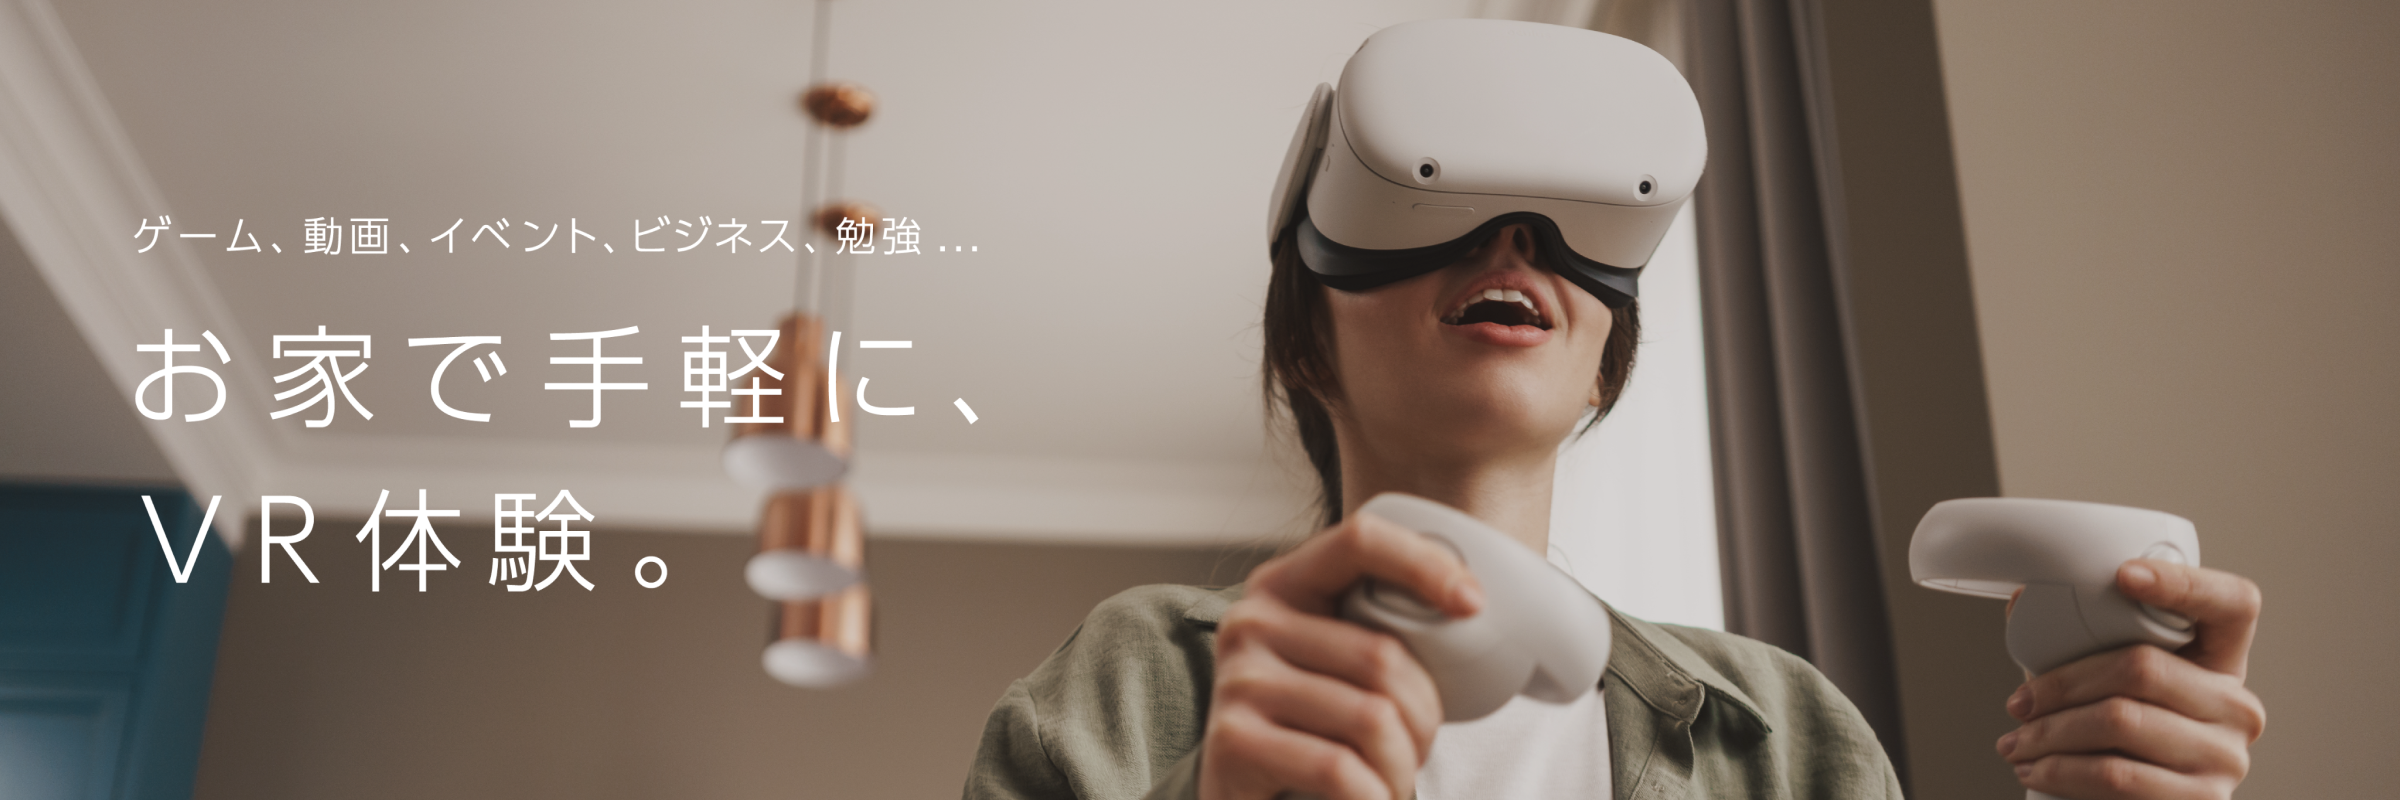 ゲーム、動画、イベント、ビジネス、勉強…お家で手軽に、VR体験。